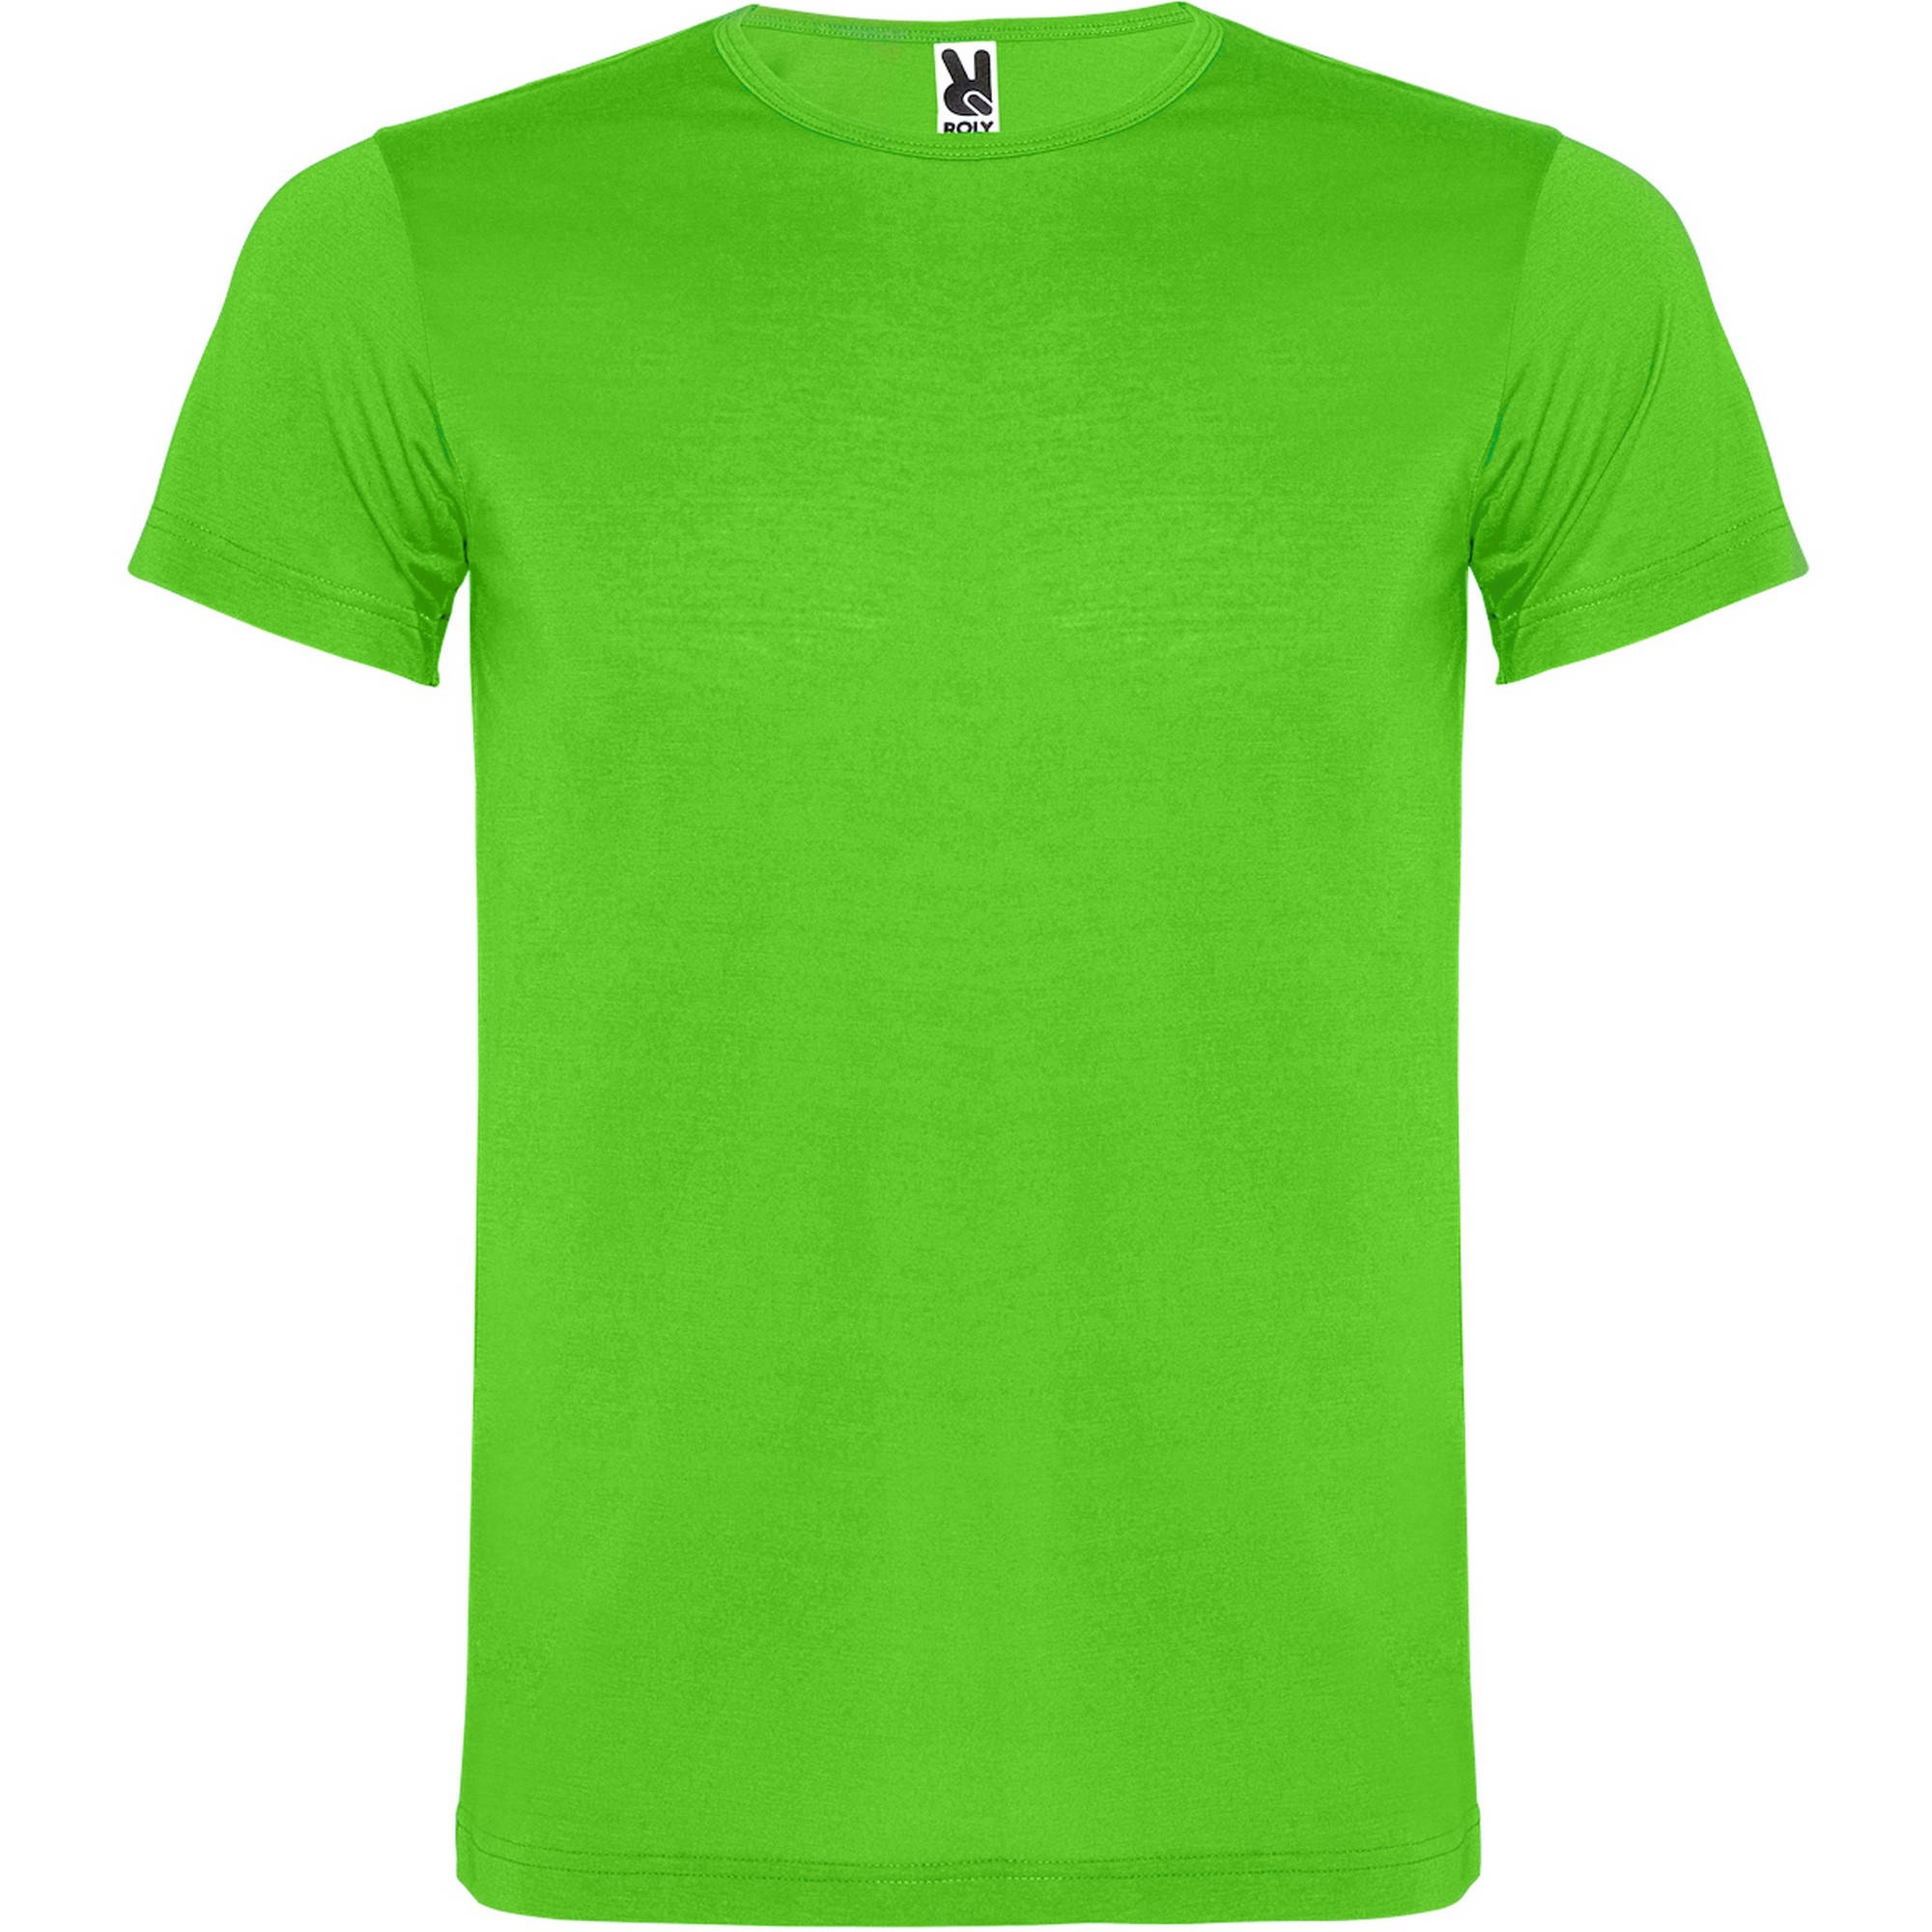 Camiseta niño Classic verde fluor Scotta - Mi Tata Lola